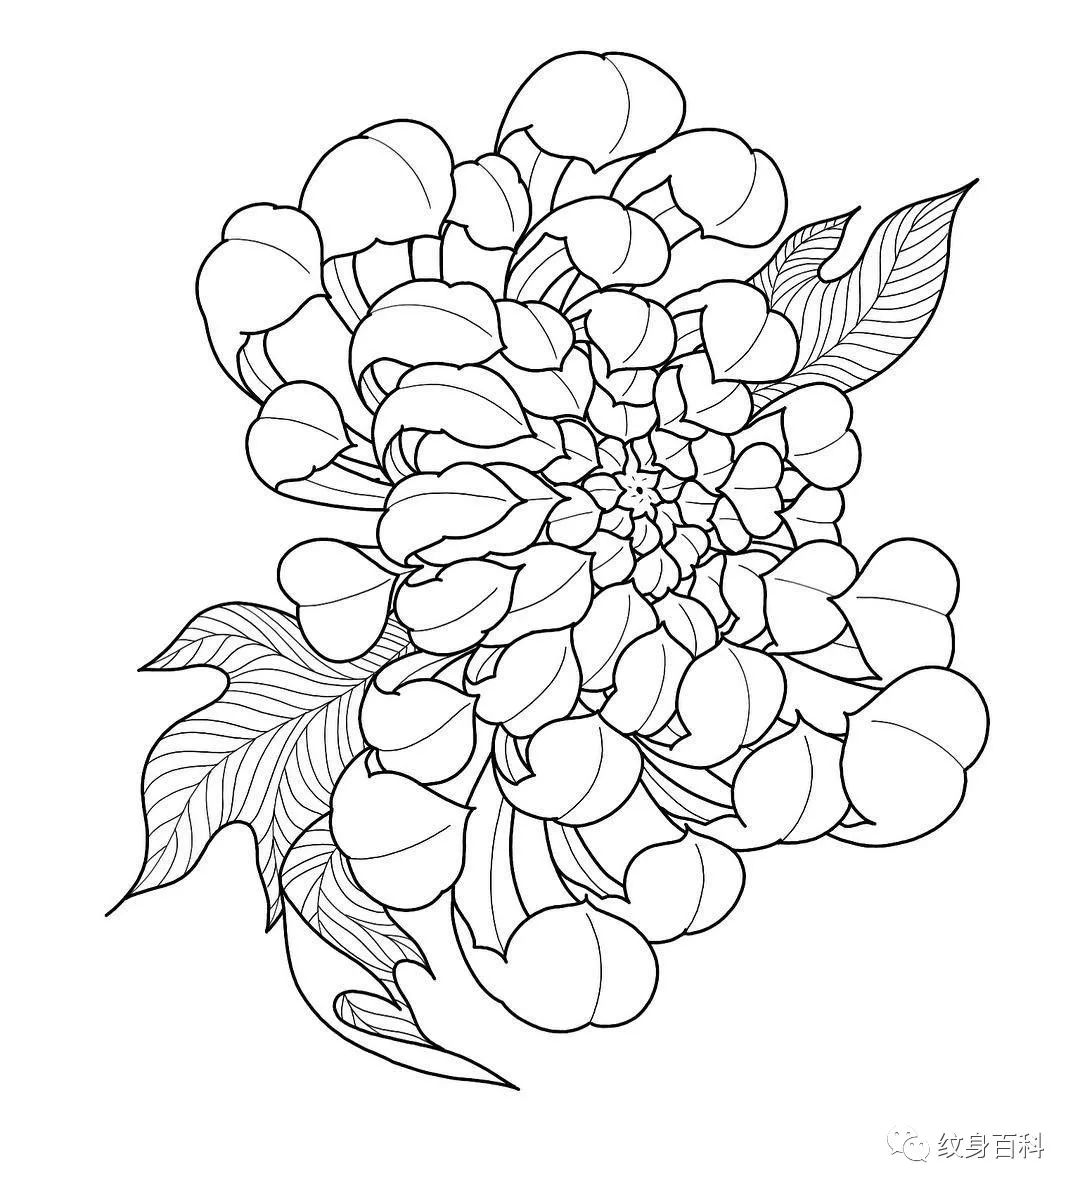 菊花纹身手稿 线条图片